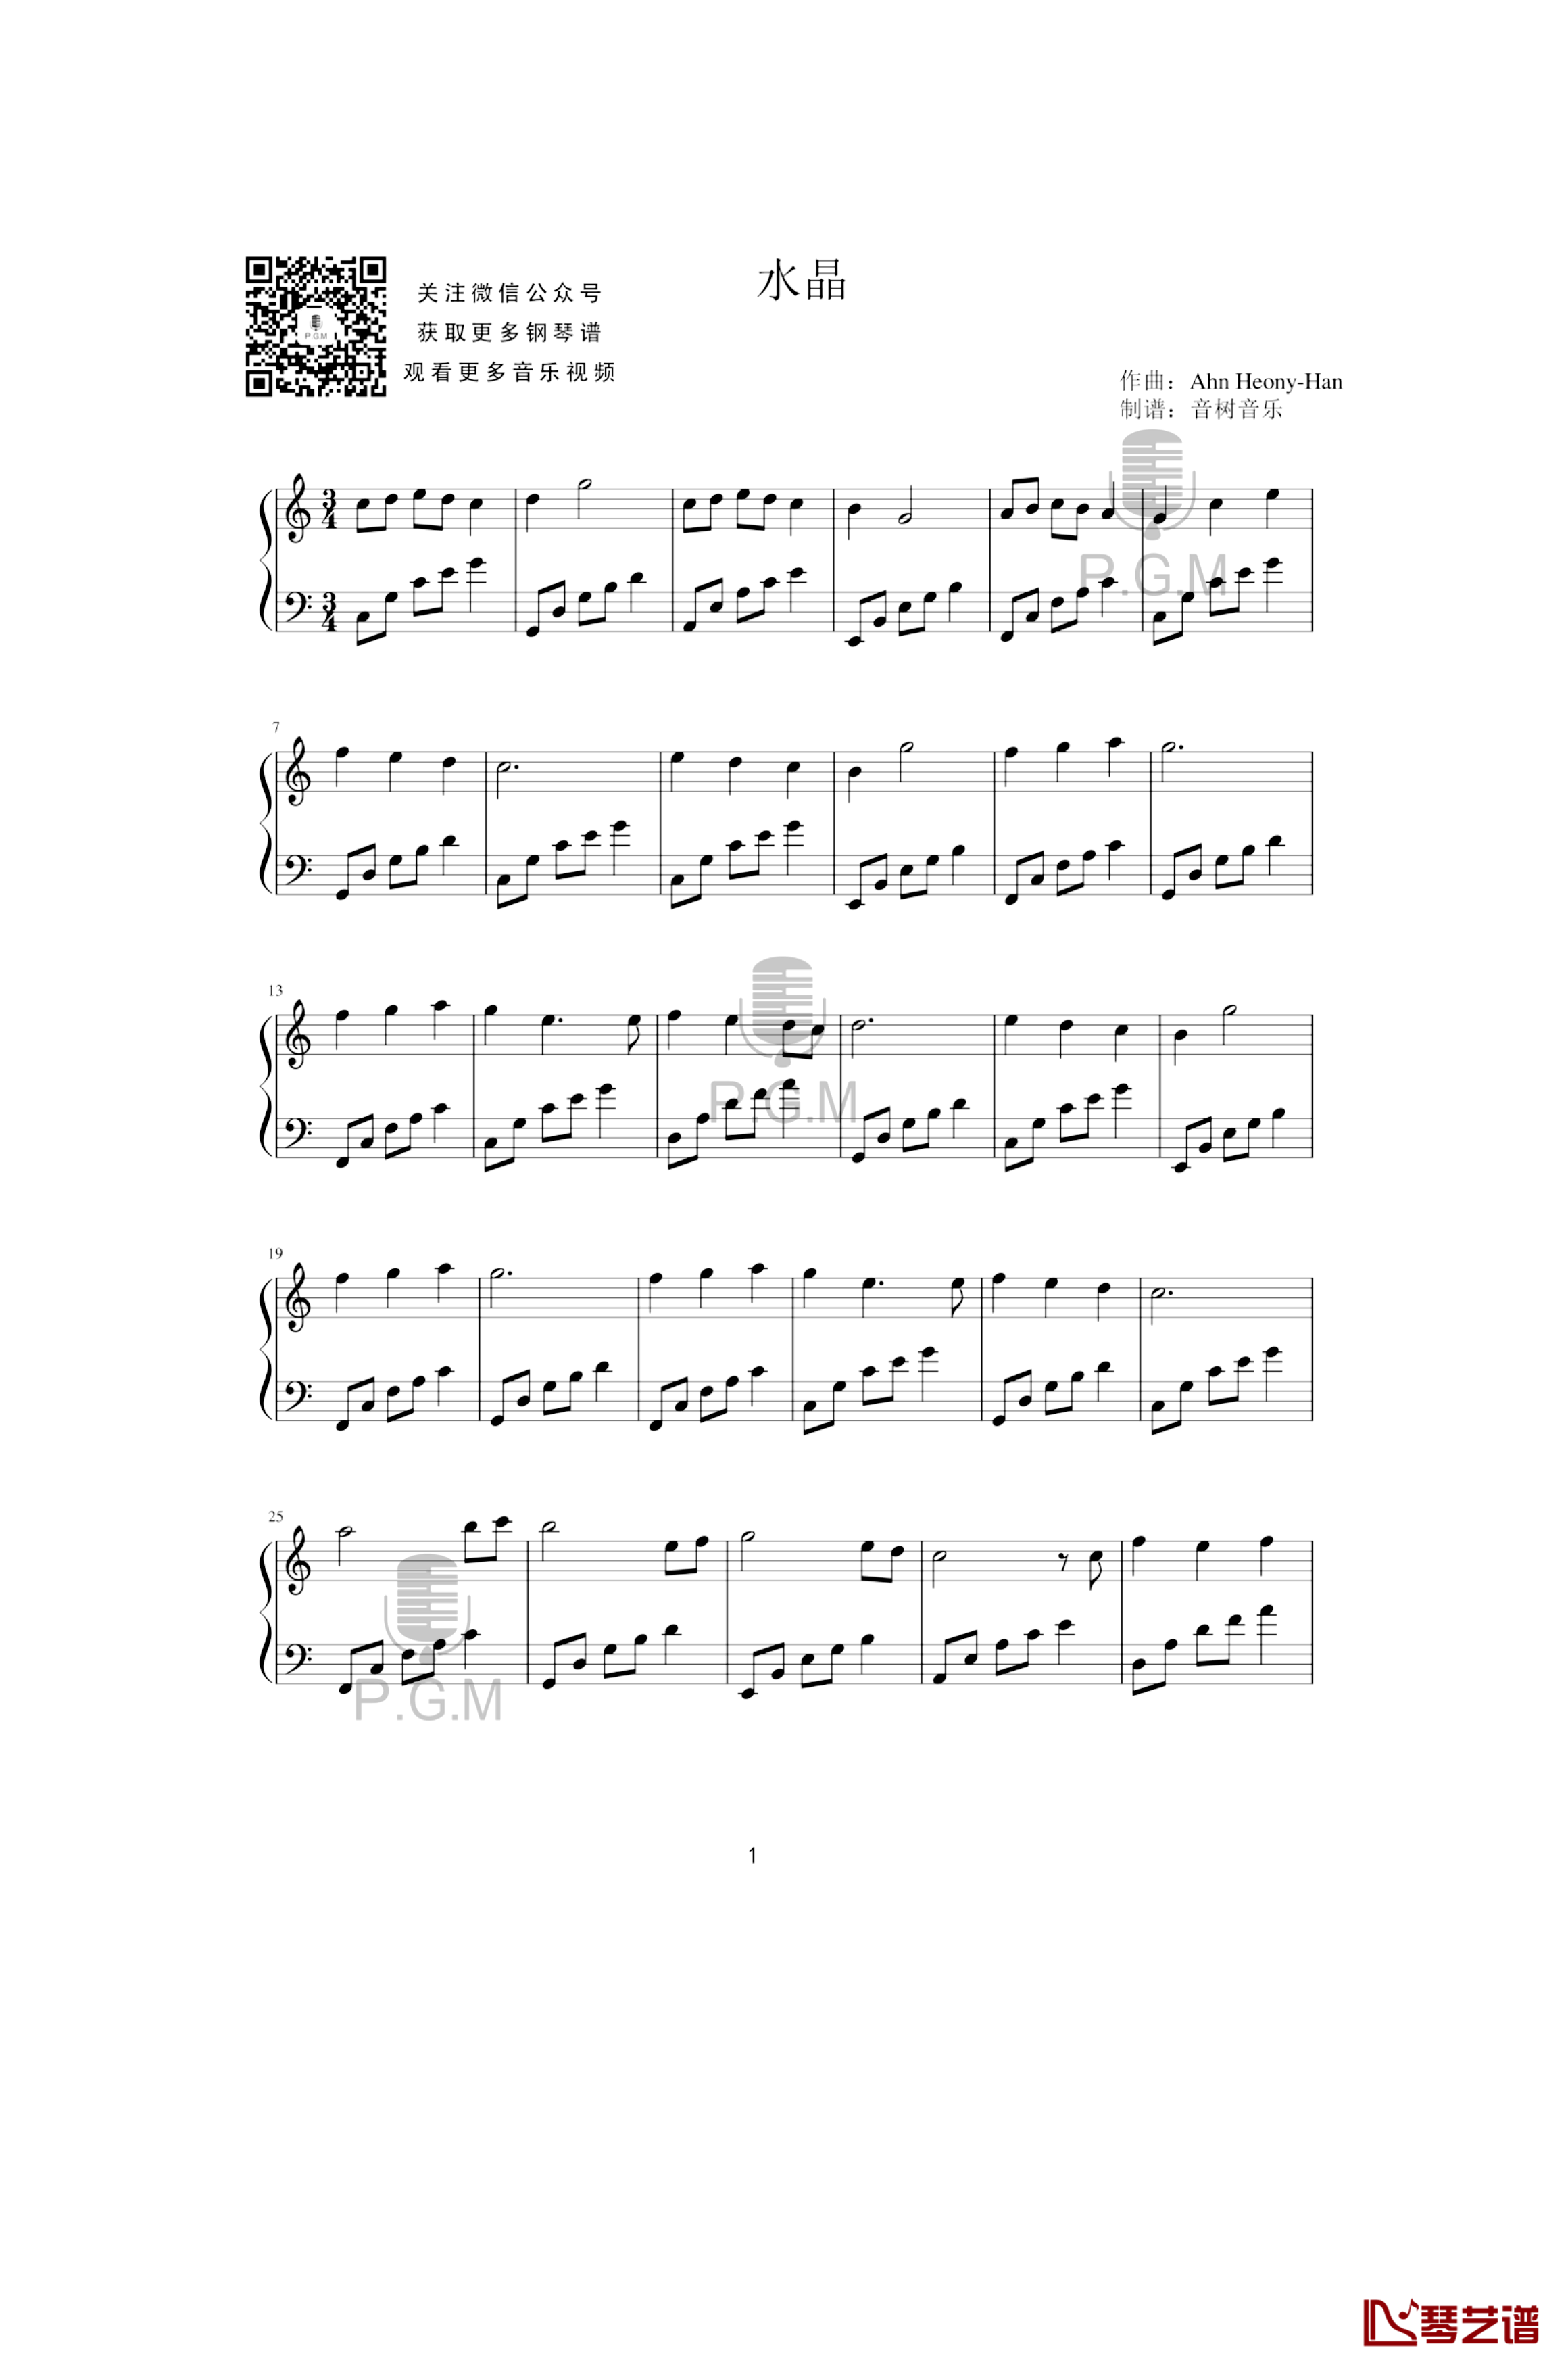 水晶钢琴谱-独奏钢琴曲1